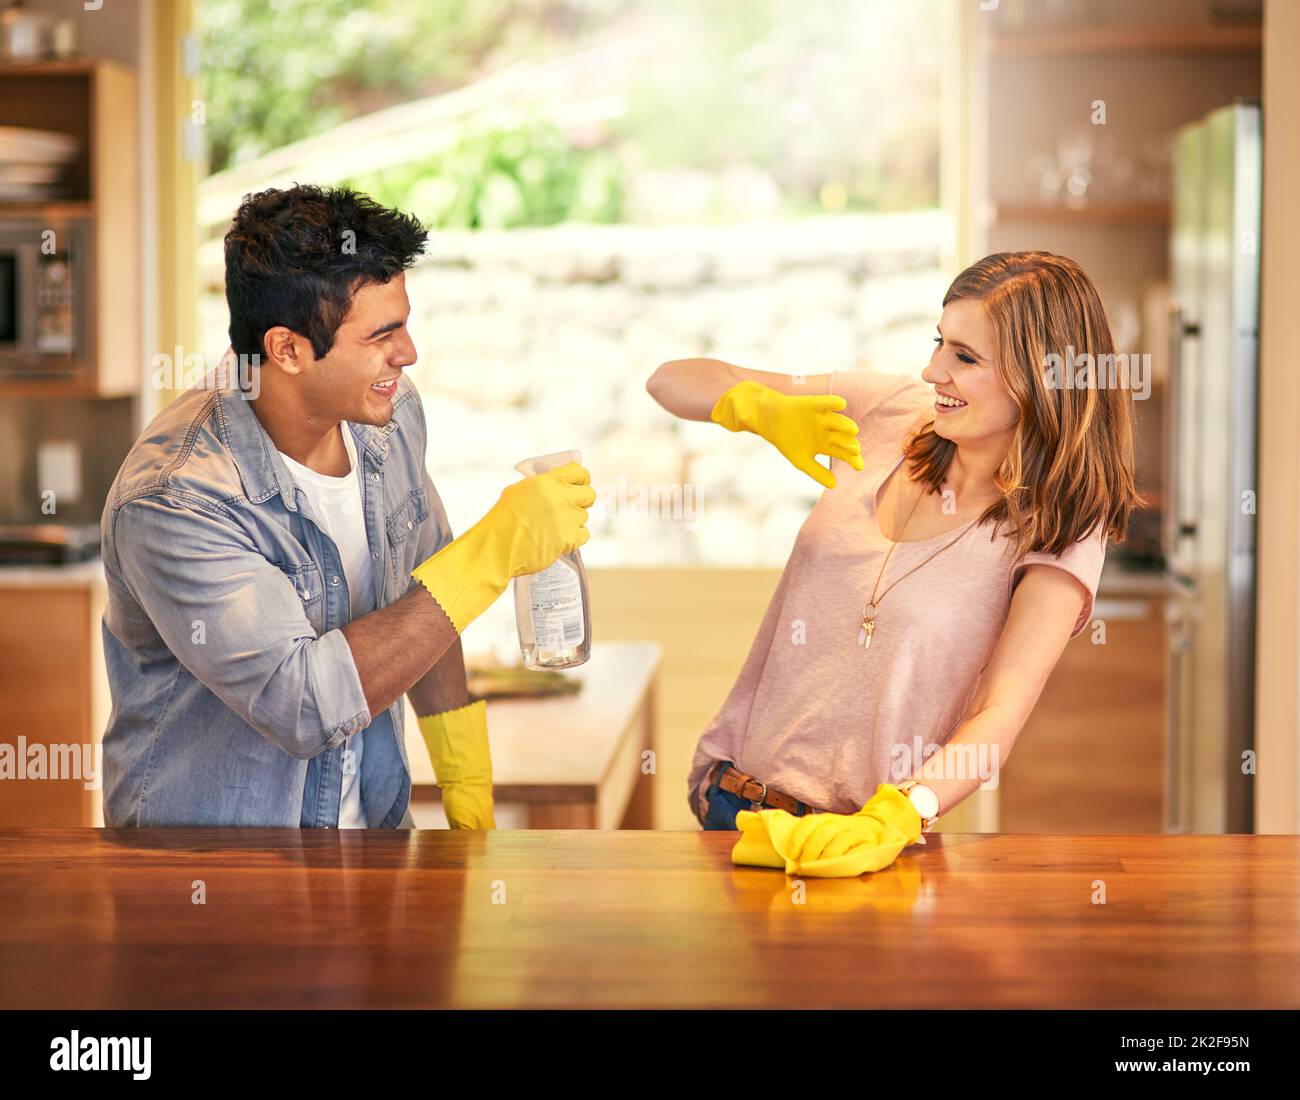 Añadir un poco de diversión a sus tareas domésticas. Una foto de una pareja joven que se desandeaba mientras limpiaba la cocina. Foto de stock